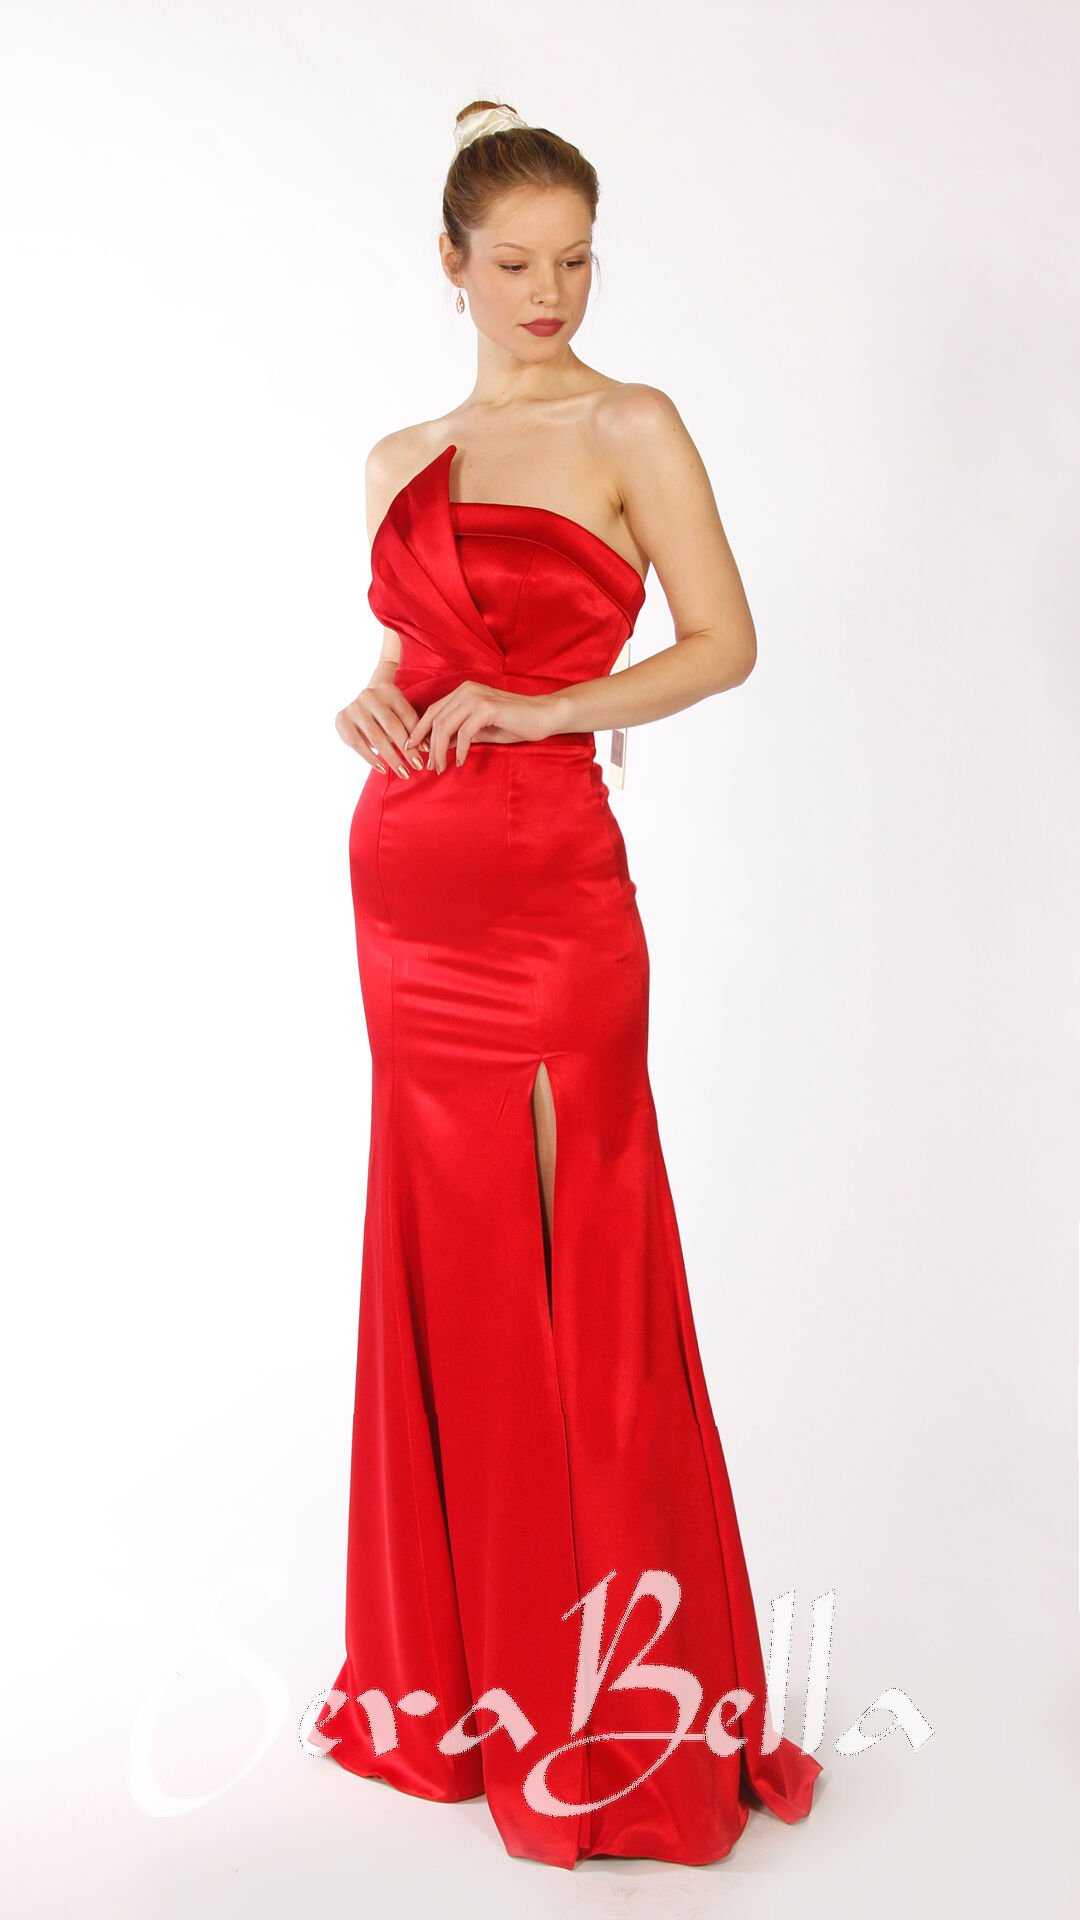 Frau mit elegantem roten Kleid